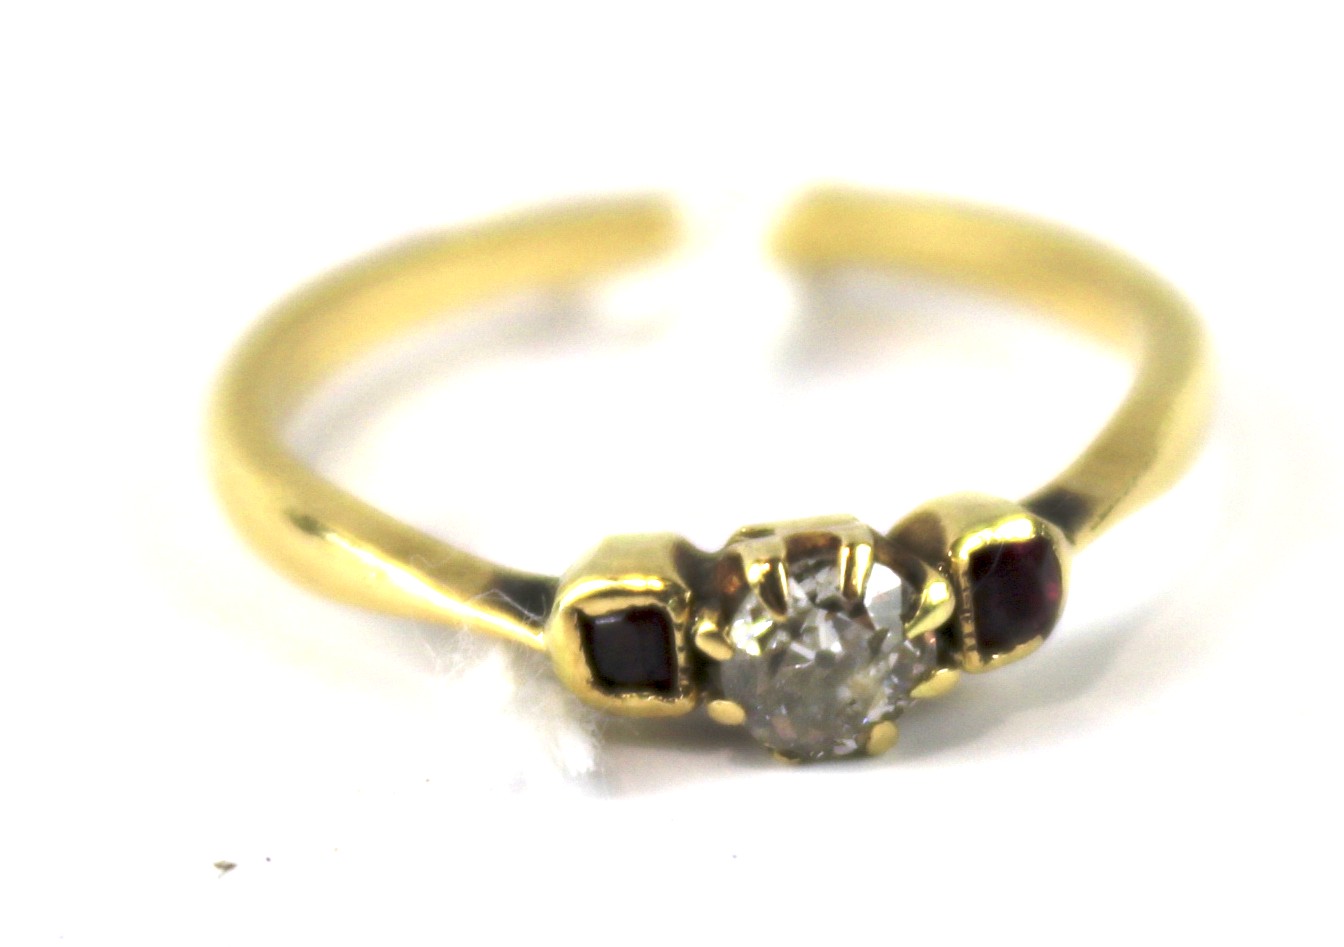 An unmarked yellow metal ladies gem set ring. - Image 2 of 2